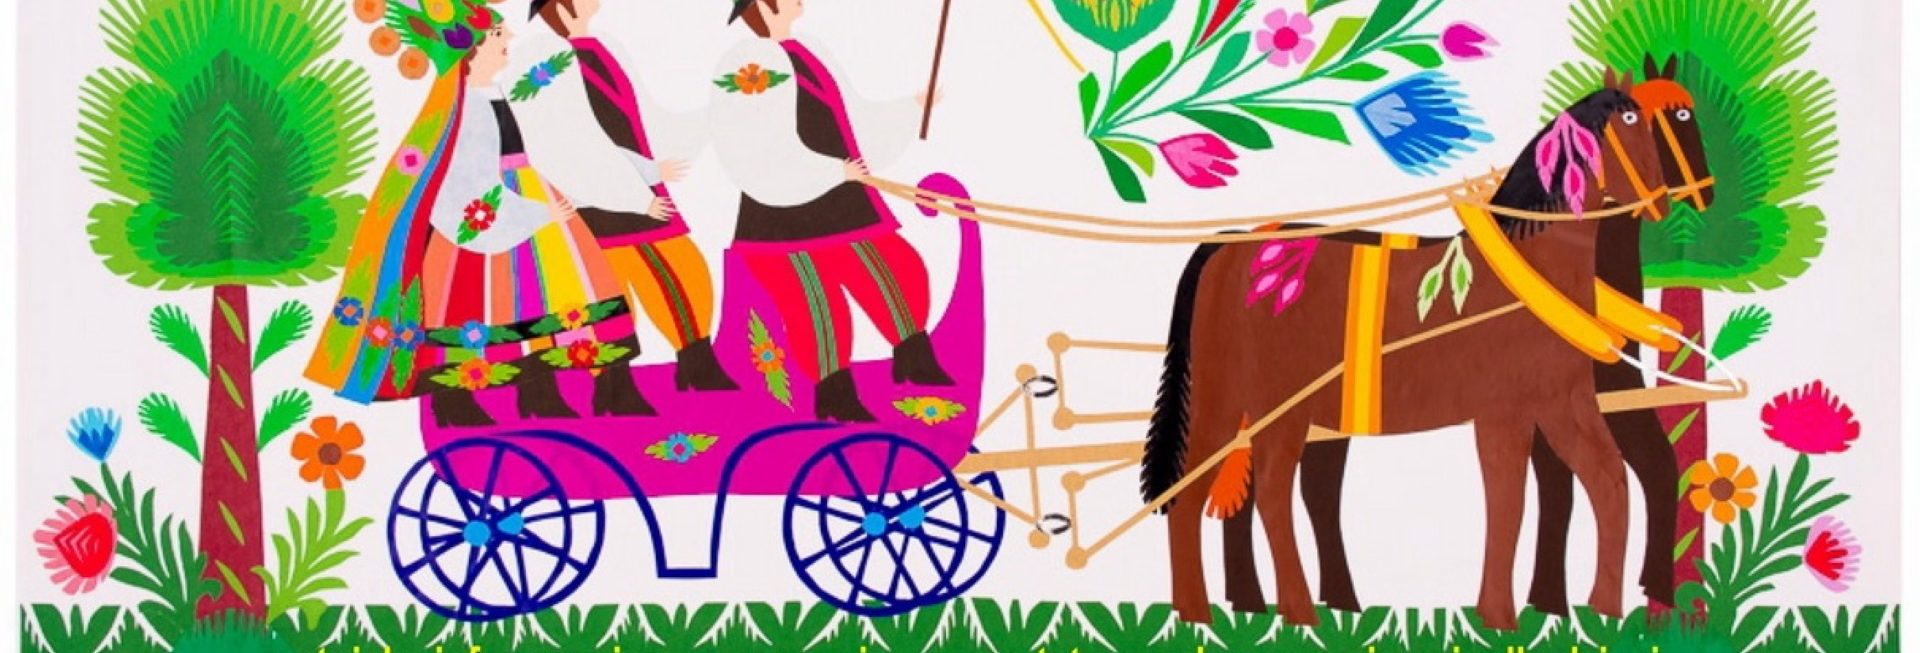 Plakat graficzny zapraszający do Wilkas na cykliczna imprezę Międzynarodowy Jarmark Folkloru - Wilkasy 2021. Na kolorowym graficznym plakacie widzimy wóz zaprzęgnięty w konie, a na nim trzy postacie ubrane w regionalne stroje ludowe.      